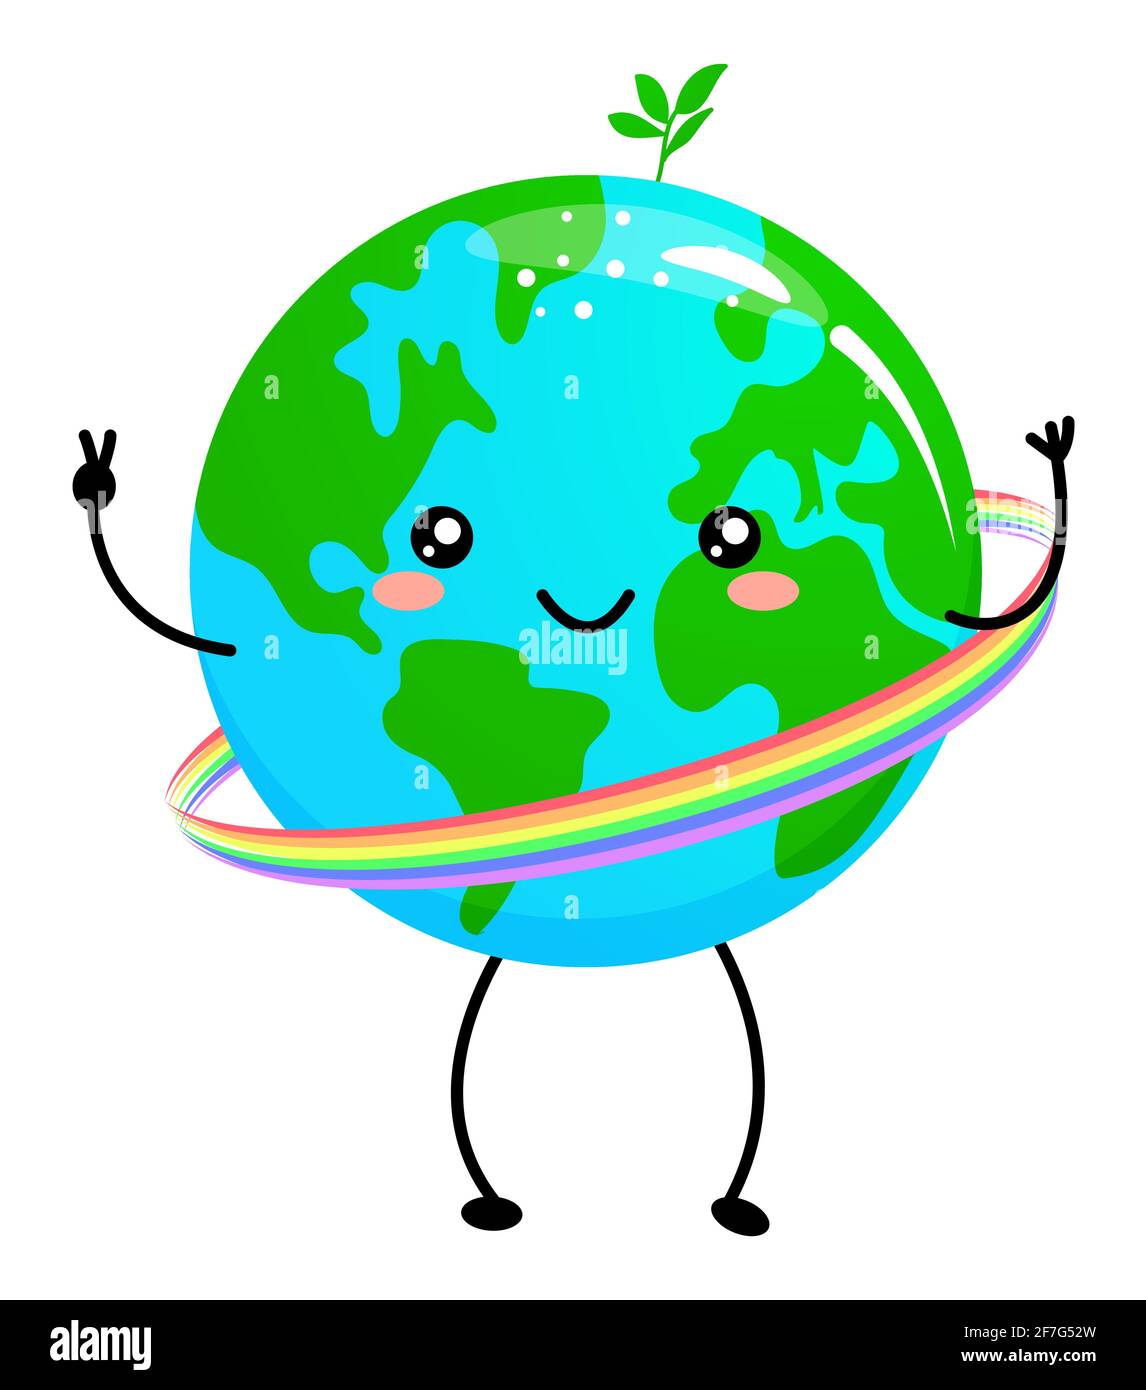 Feliz Día de la Tierra - Planeta Tierra kawaii dibujo con arco iris hoop  hola. Diseño gráfico textil con diseño de póster o camiseta. Hermosa  ilustración. Día de la Tierra envi Imagen